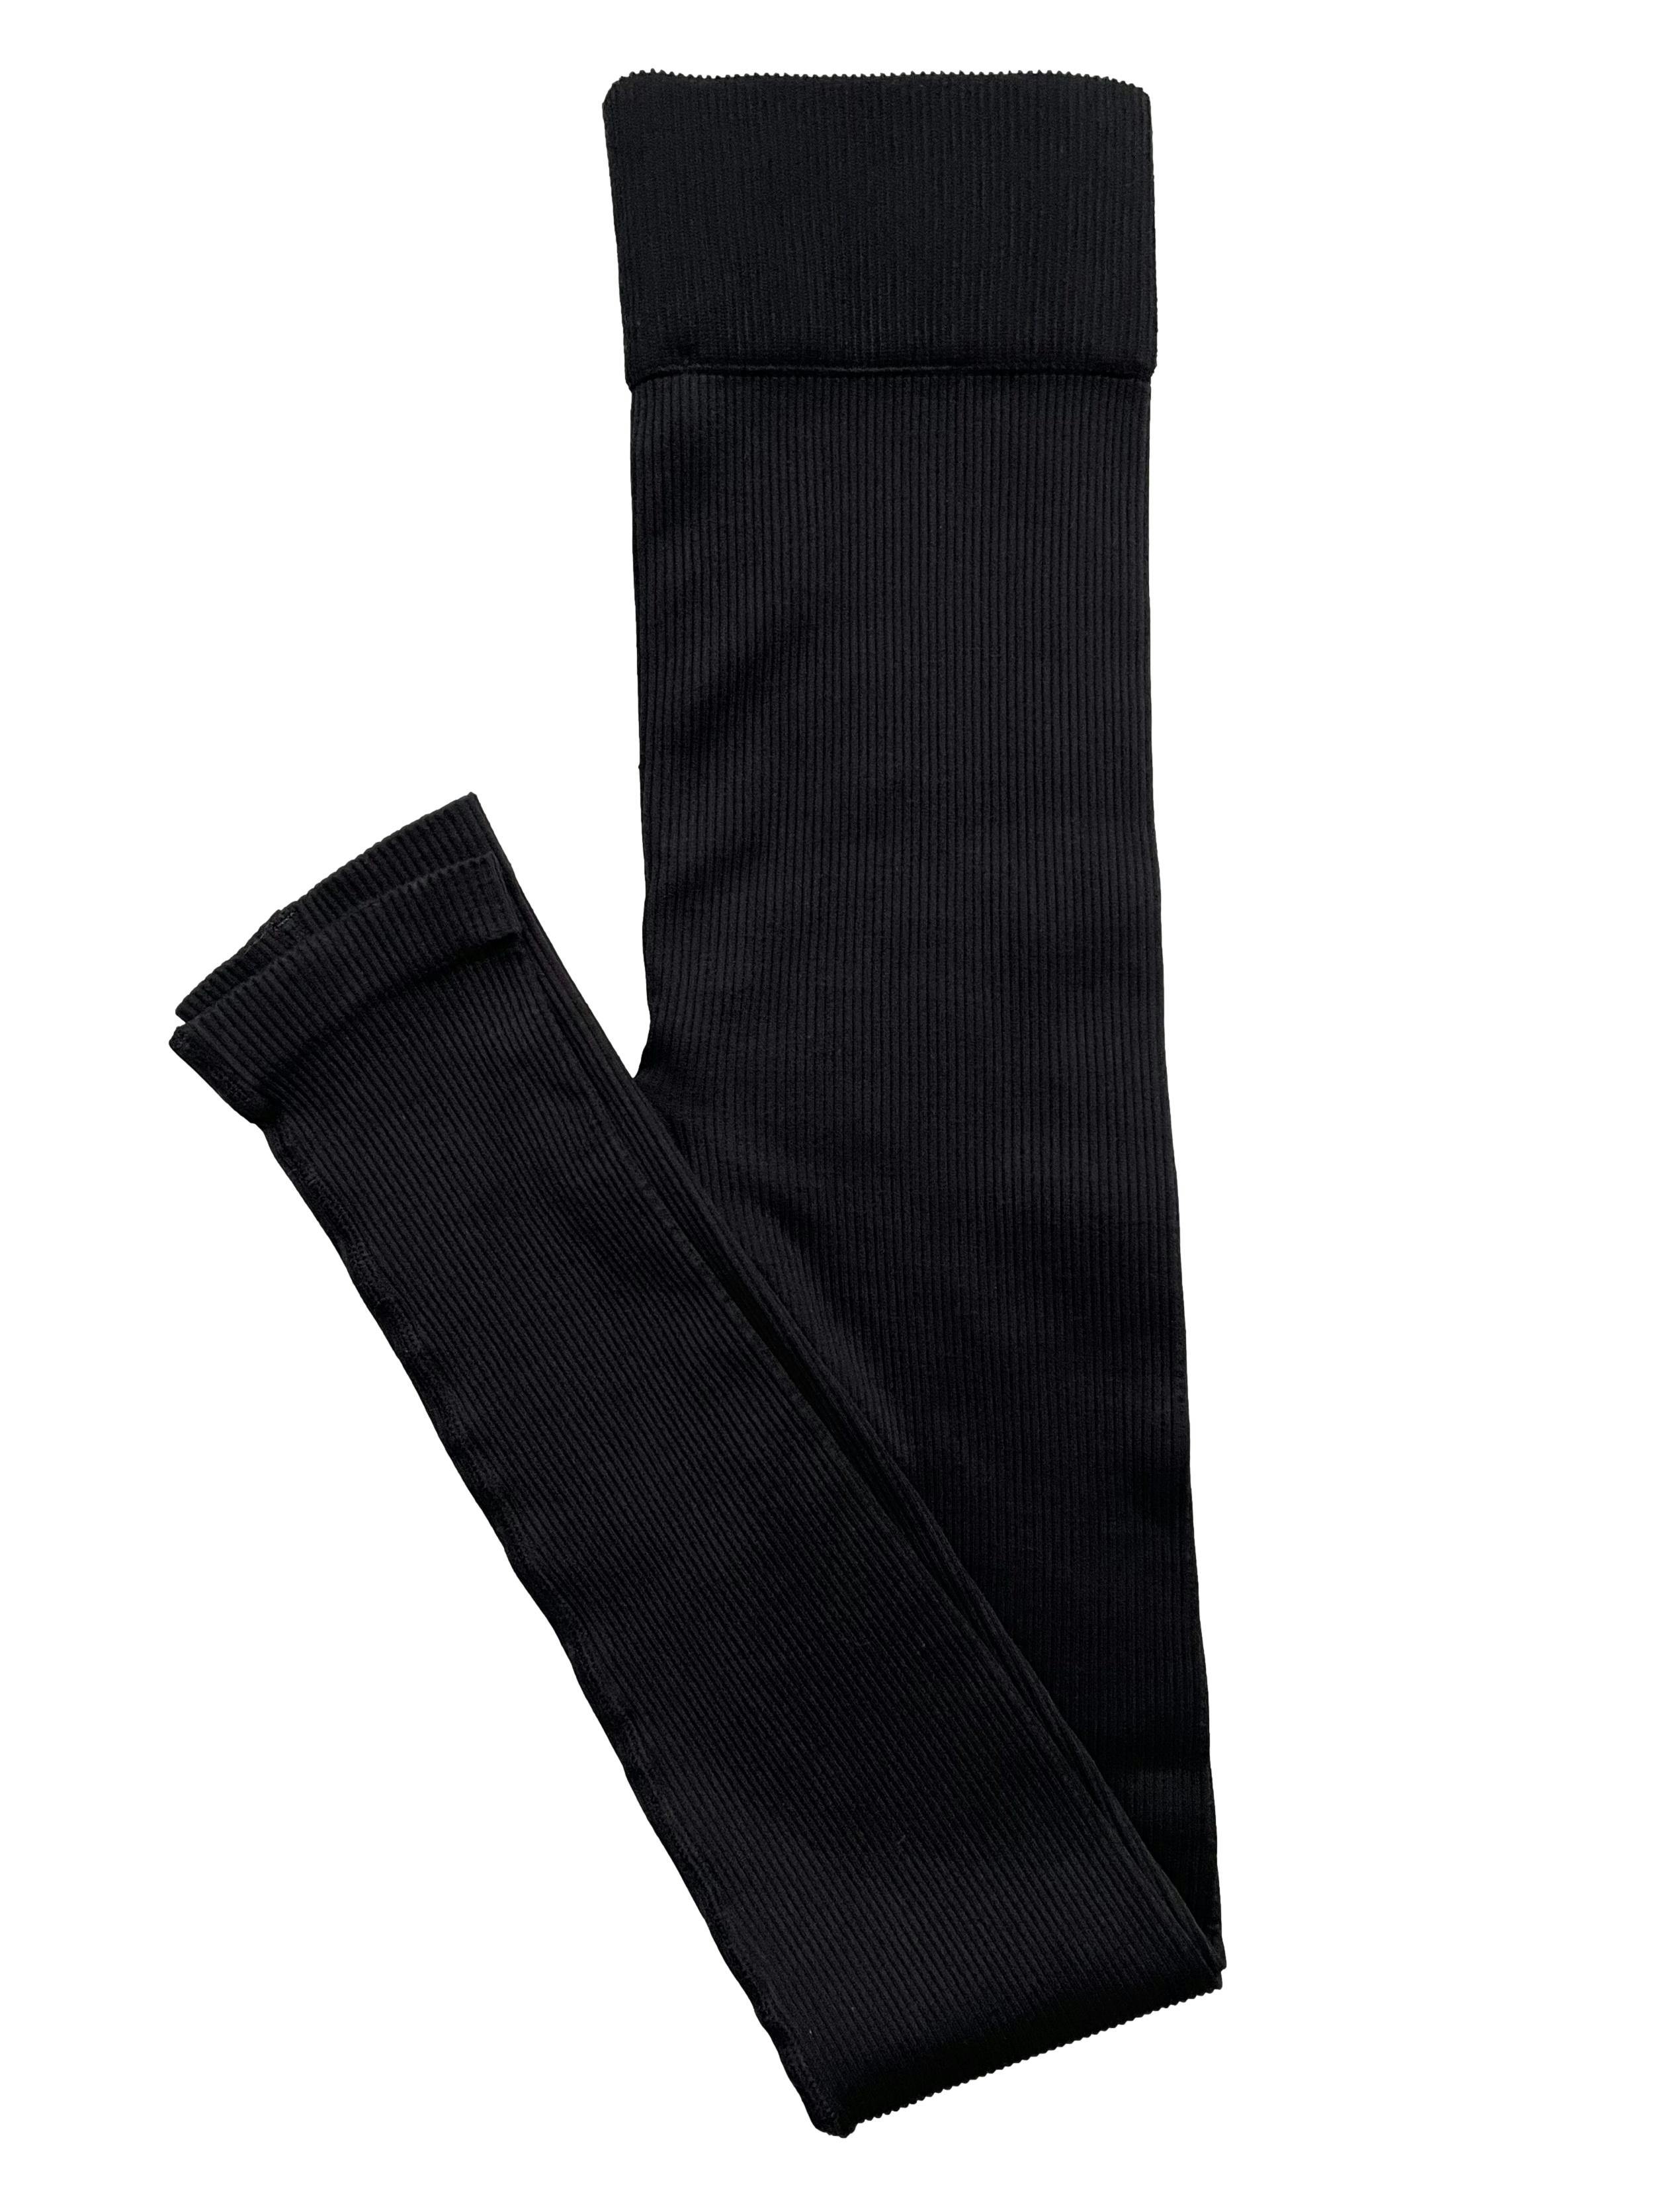 Leggings Marquis Active Wear negras acanaladas con interior polar. Cintura 60cm sin estirar, Largo 96cn.